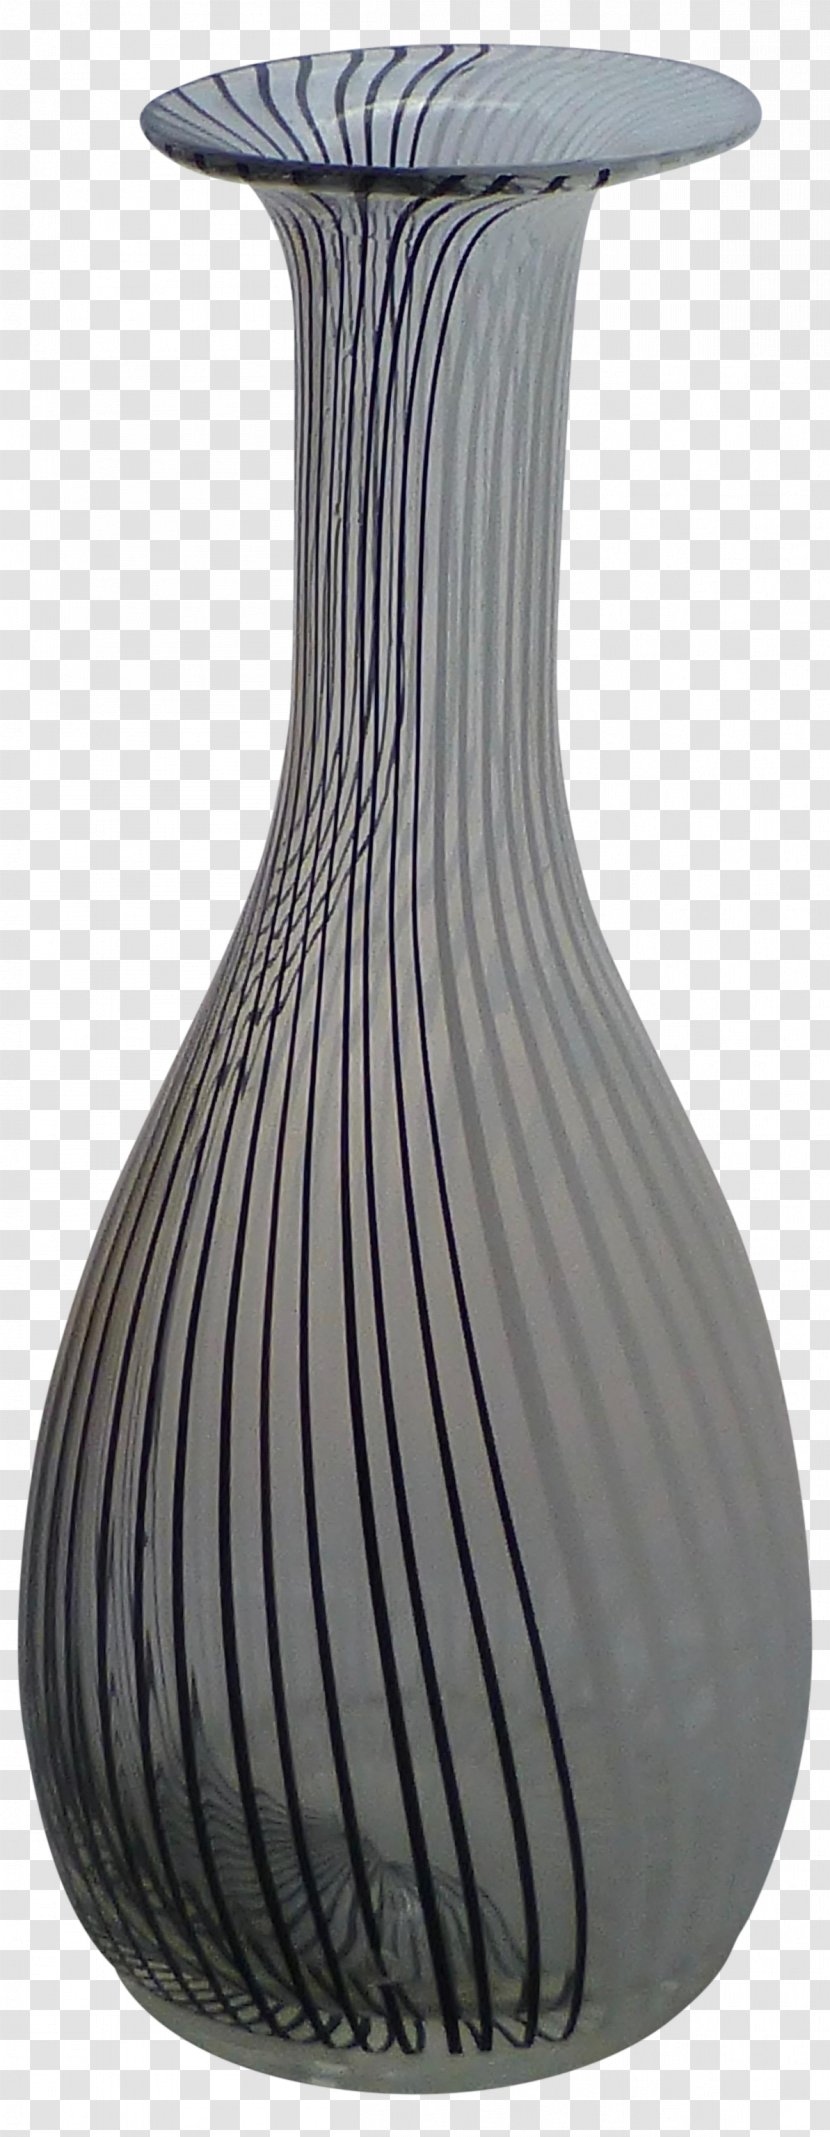 Vase Ceramic Murano Glass Tile - Artifact - Bronze Drum Design Transparent PNG